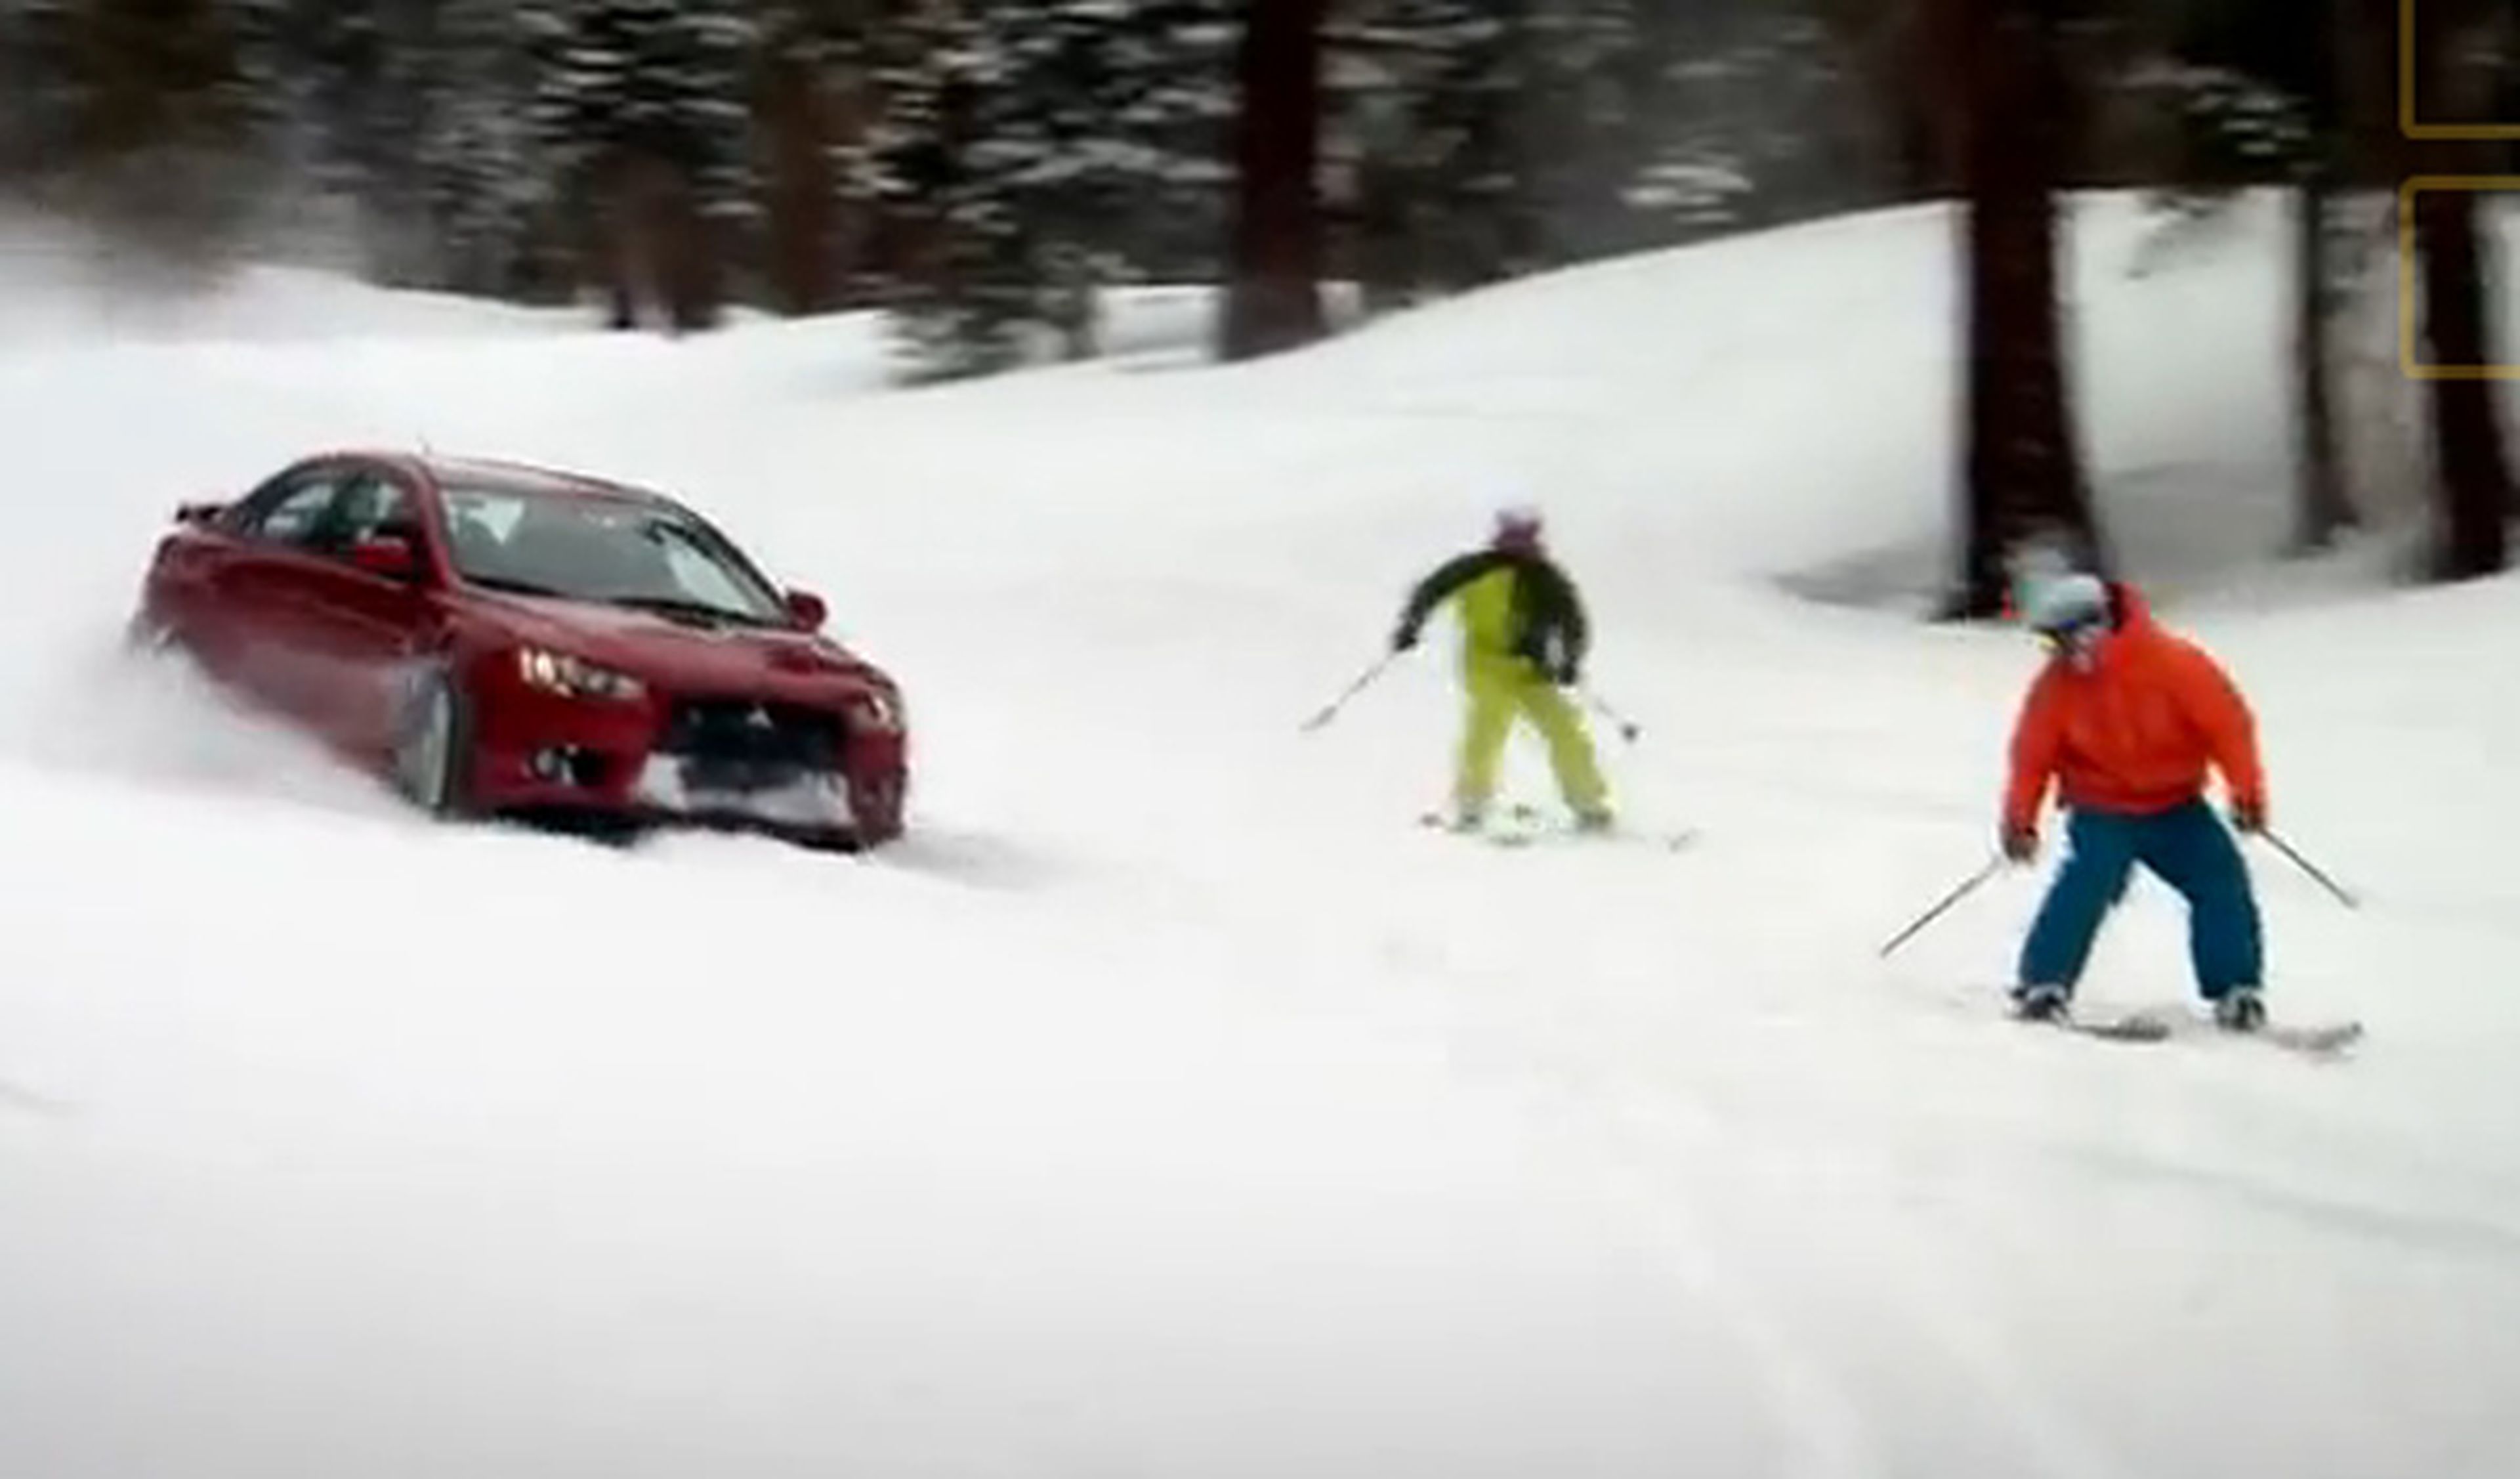 Top Gear USA: un Mitsubishi Evo contra dos esquiadores